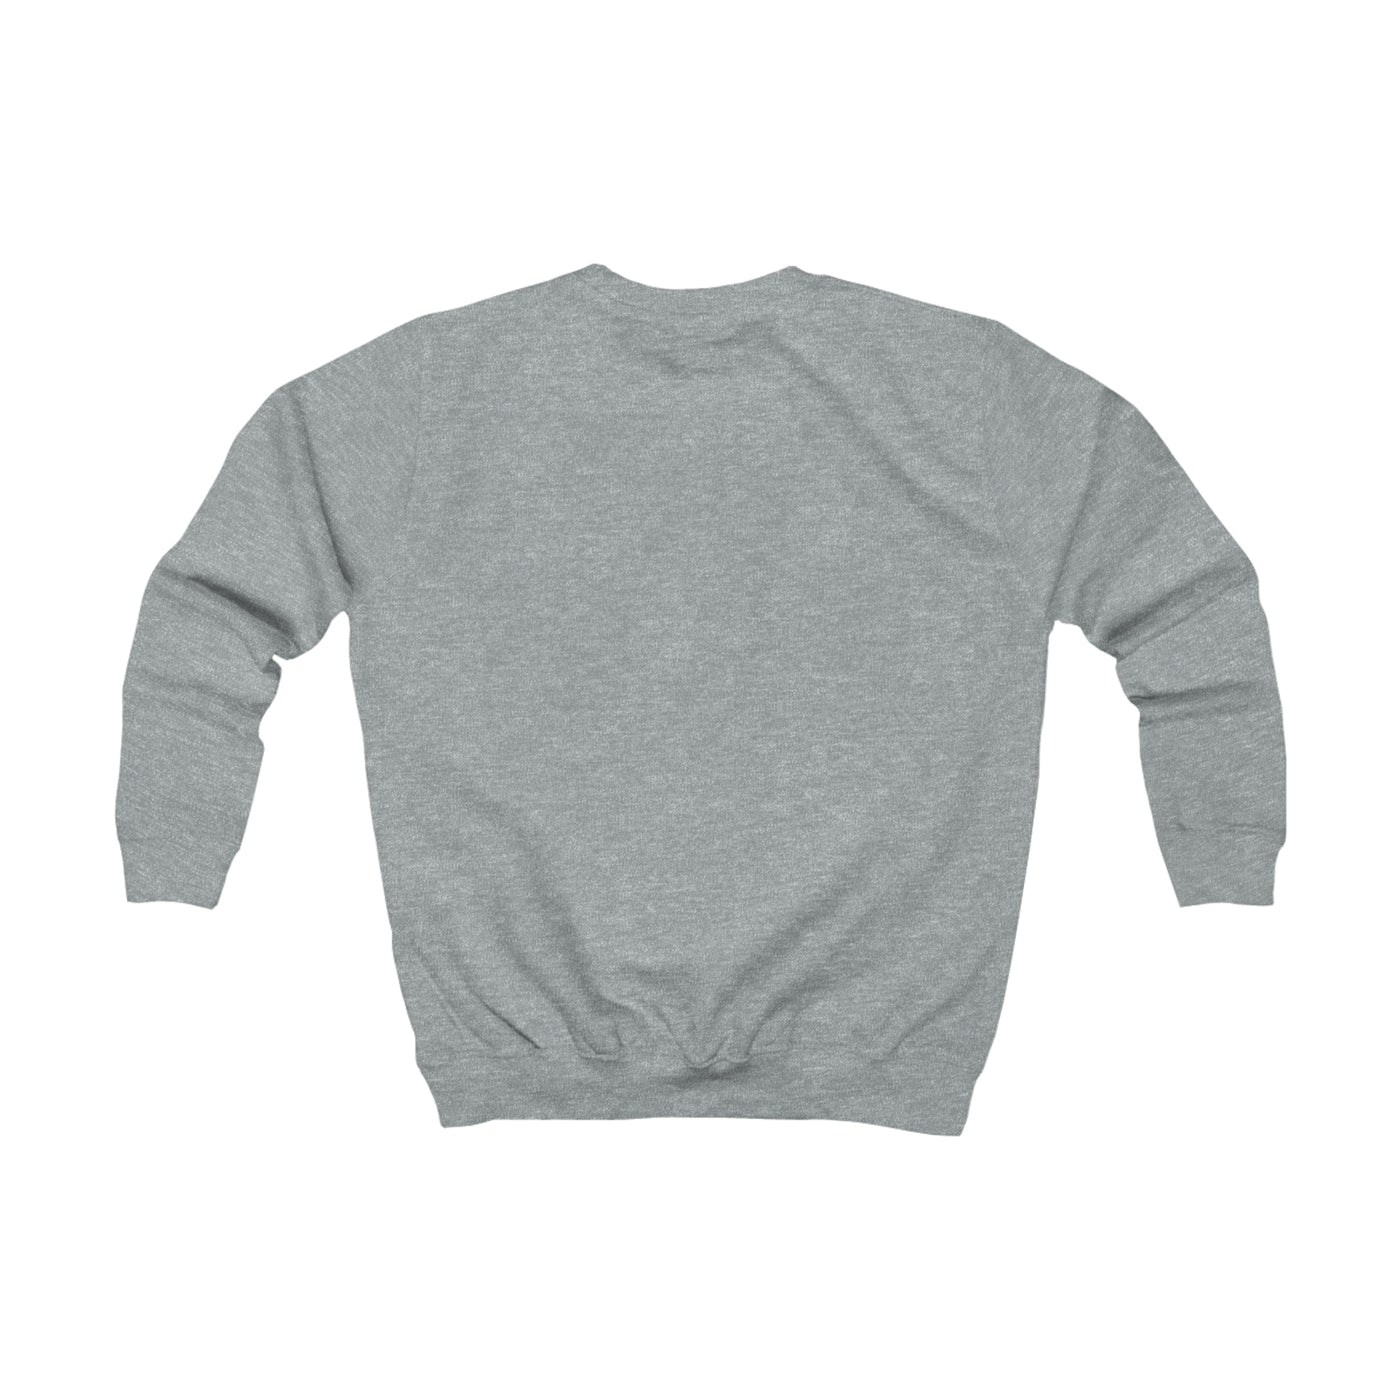 Joyful Sweatshirt - Mocha